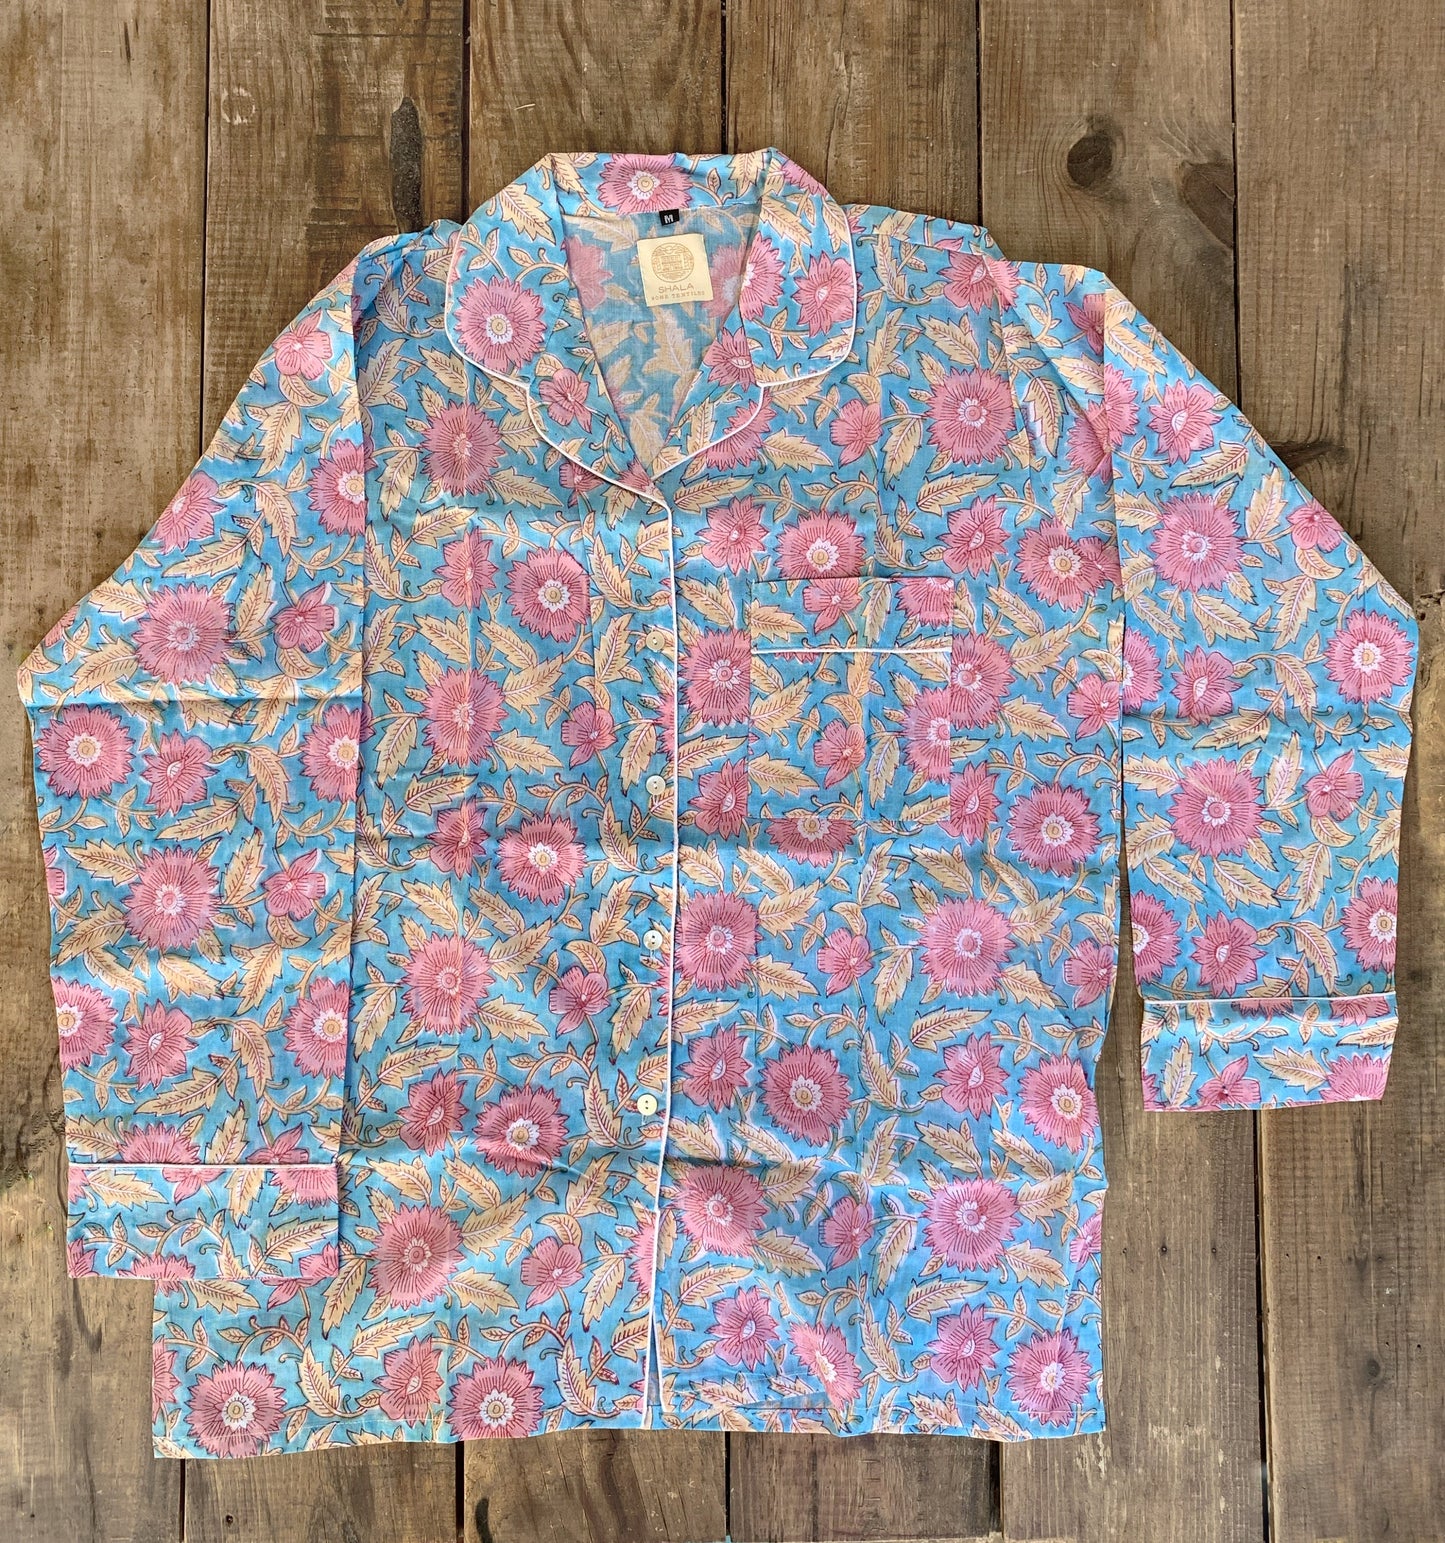 Pijama manga y pantalón largos · Algodón puro estampado block print artesanal en India · Pijama invierno algodón 100% · Turquesa flores rosa